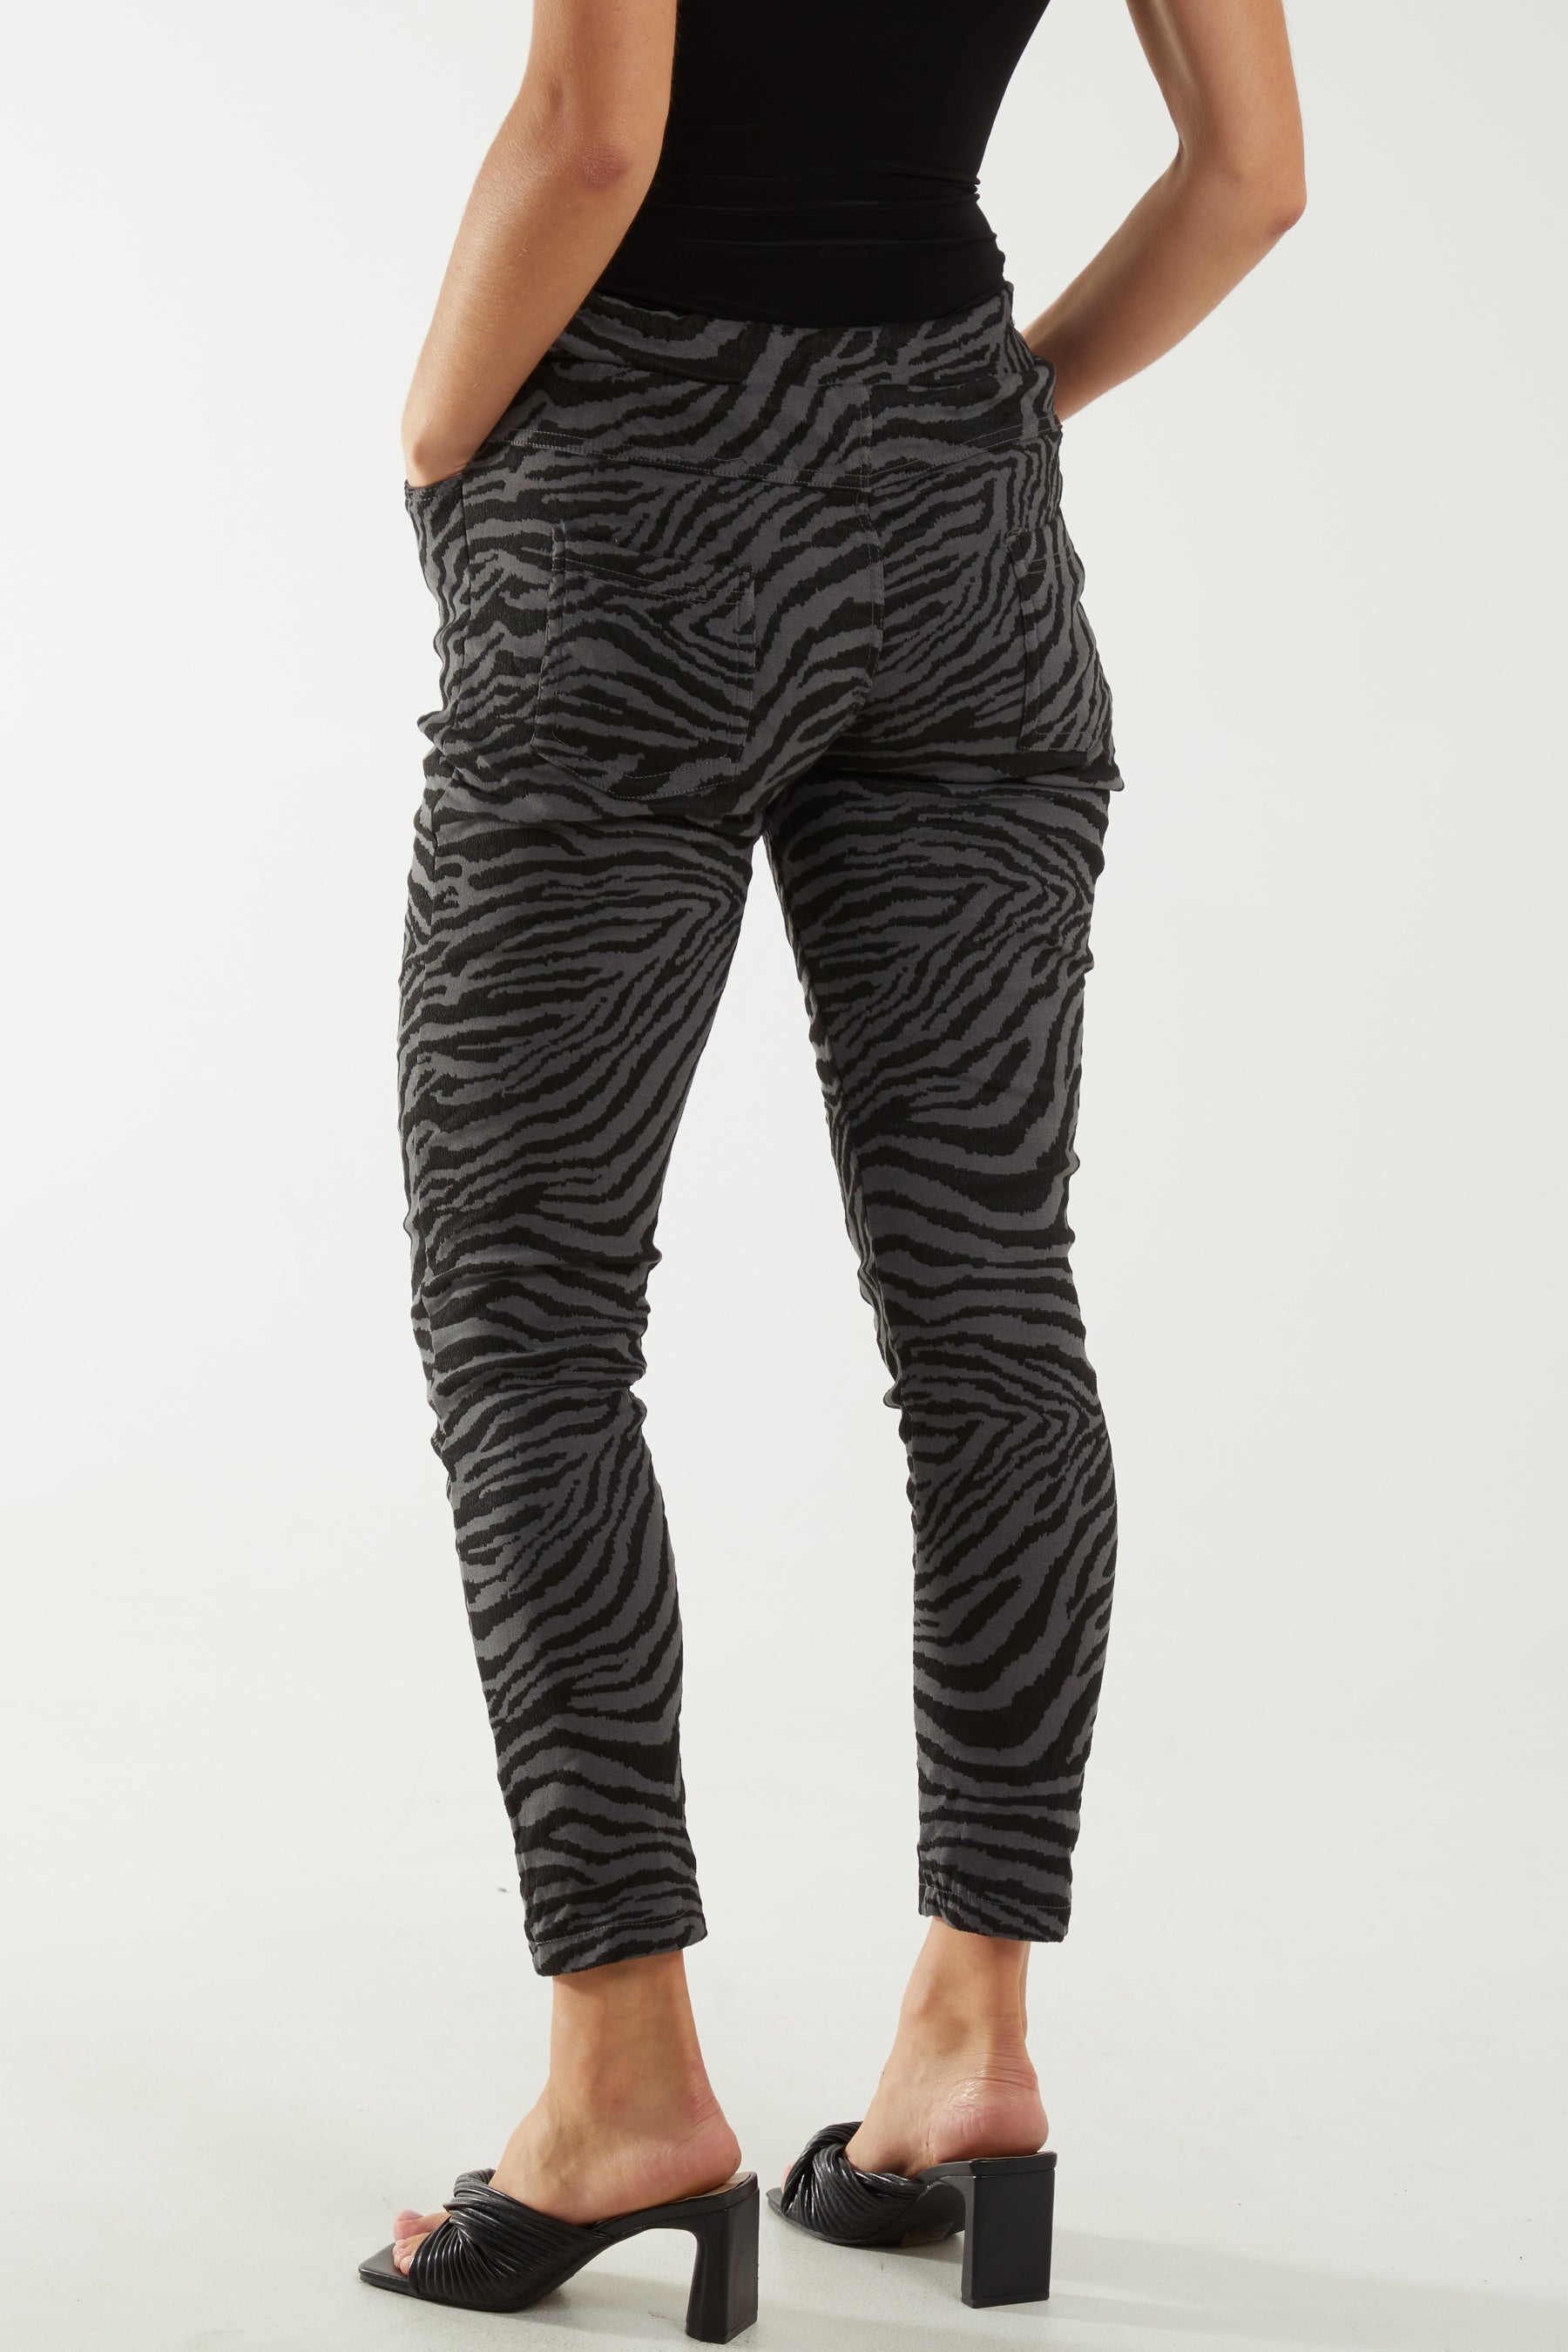 Zebra Print Elasticated Trousers